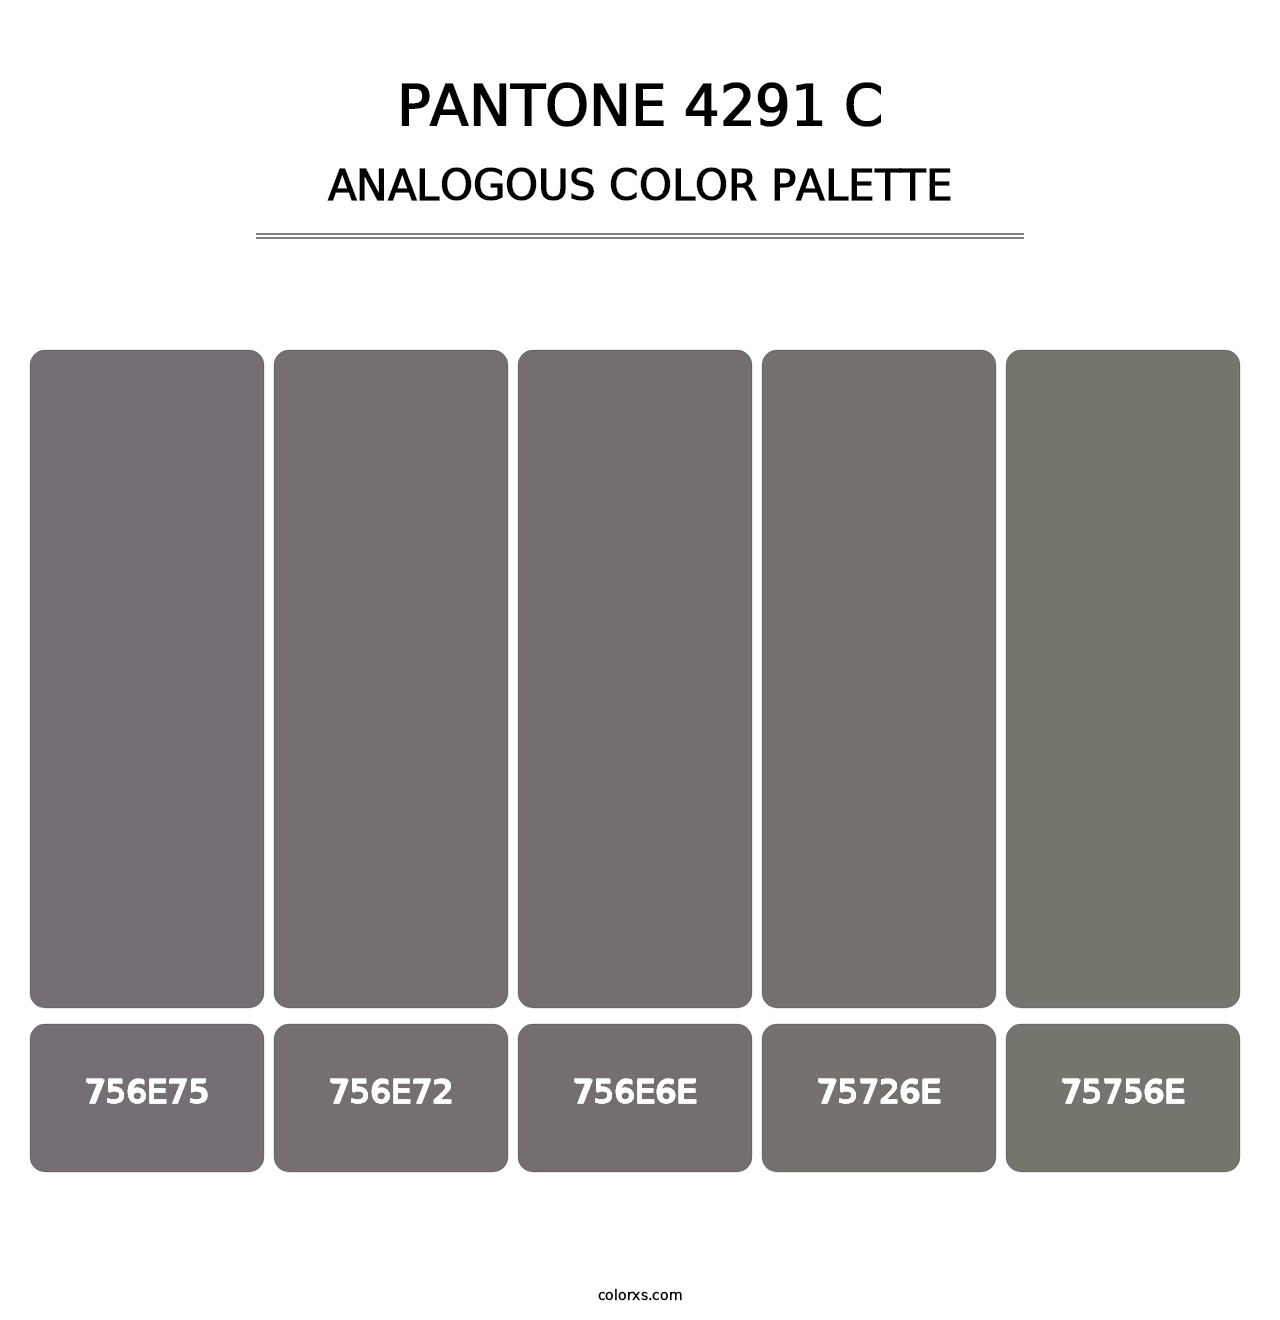 PANTONE 4291 C - Analogous Color Palette